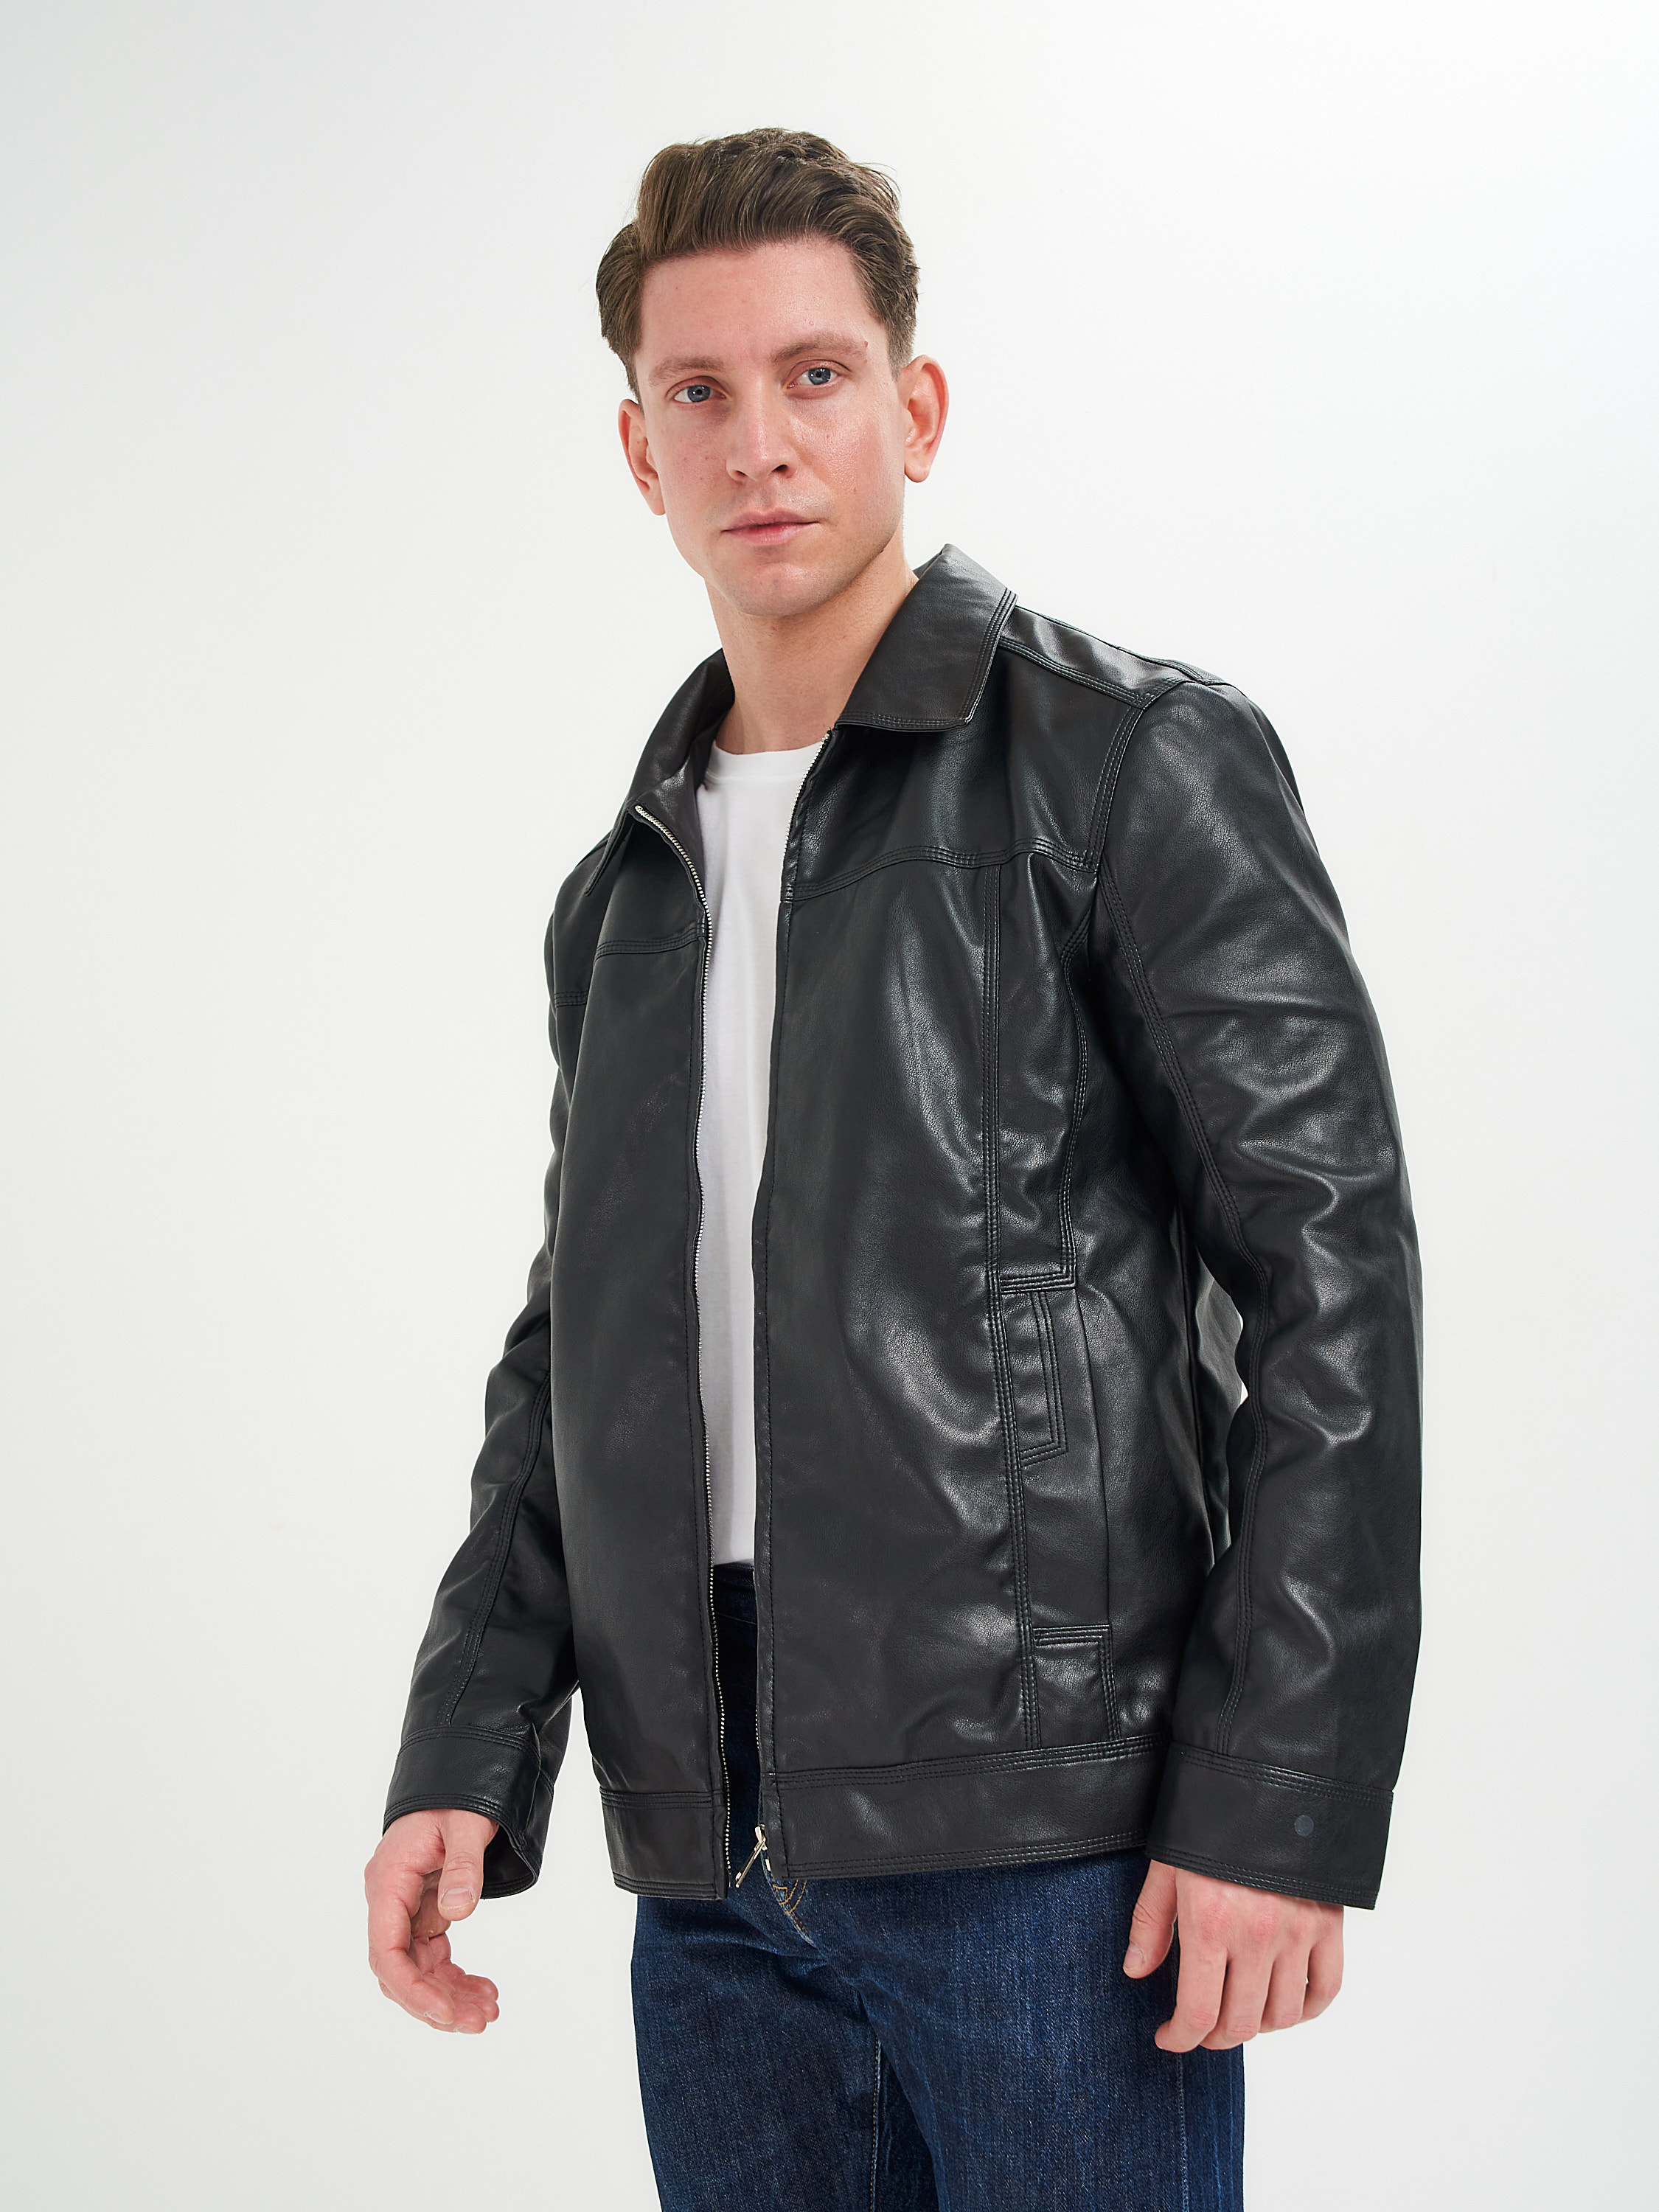 Куртка мужская BIERAODUO 631 черная 50 RU